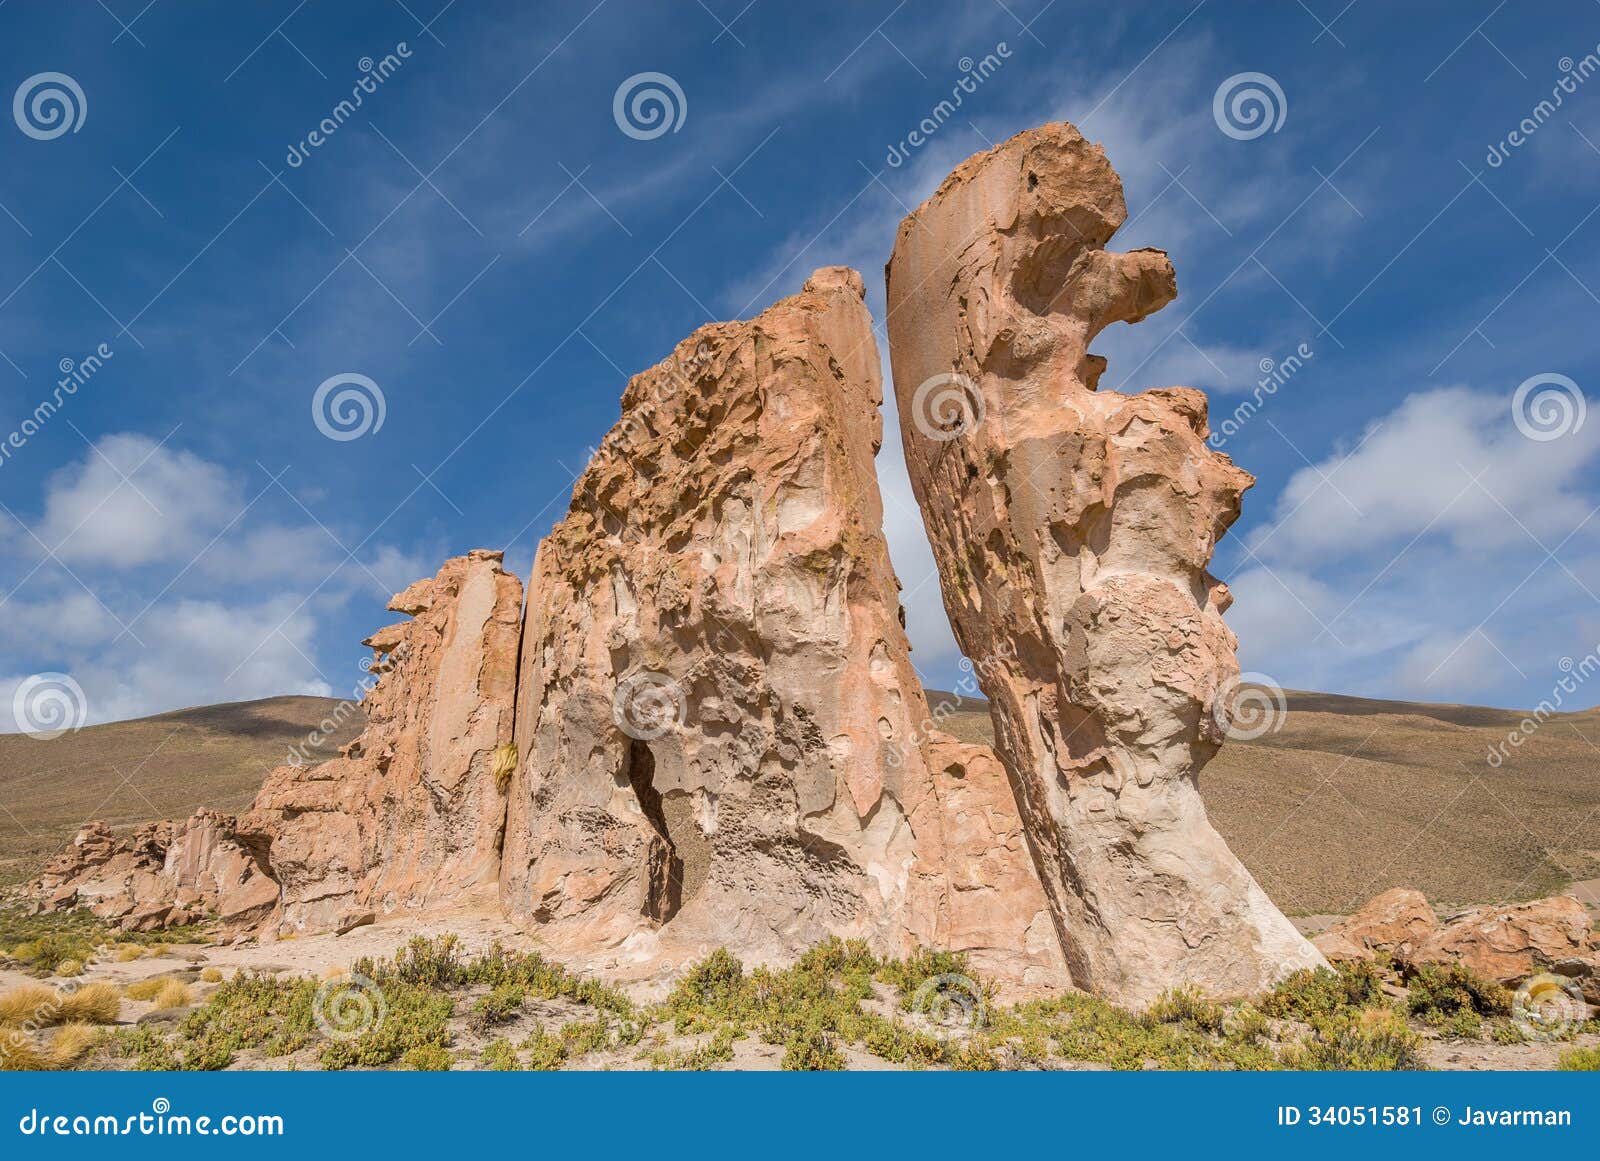 valle de rocas rock formations, altiplano bolivia